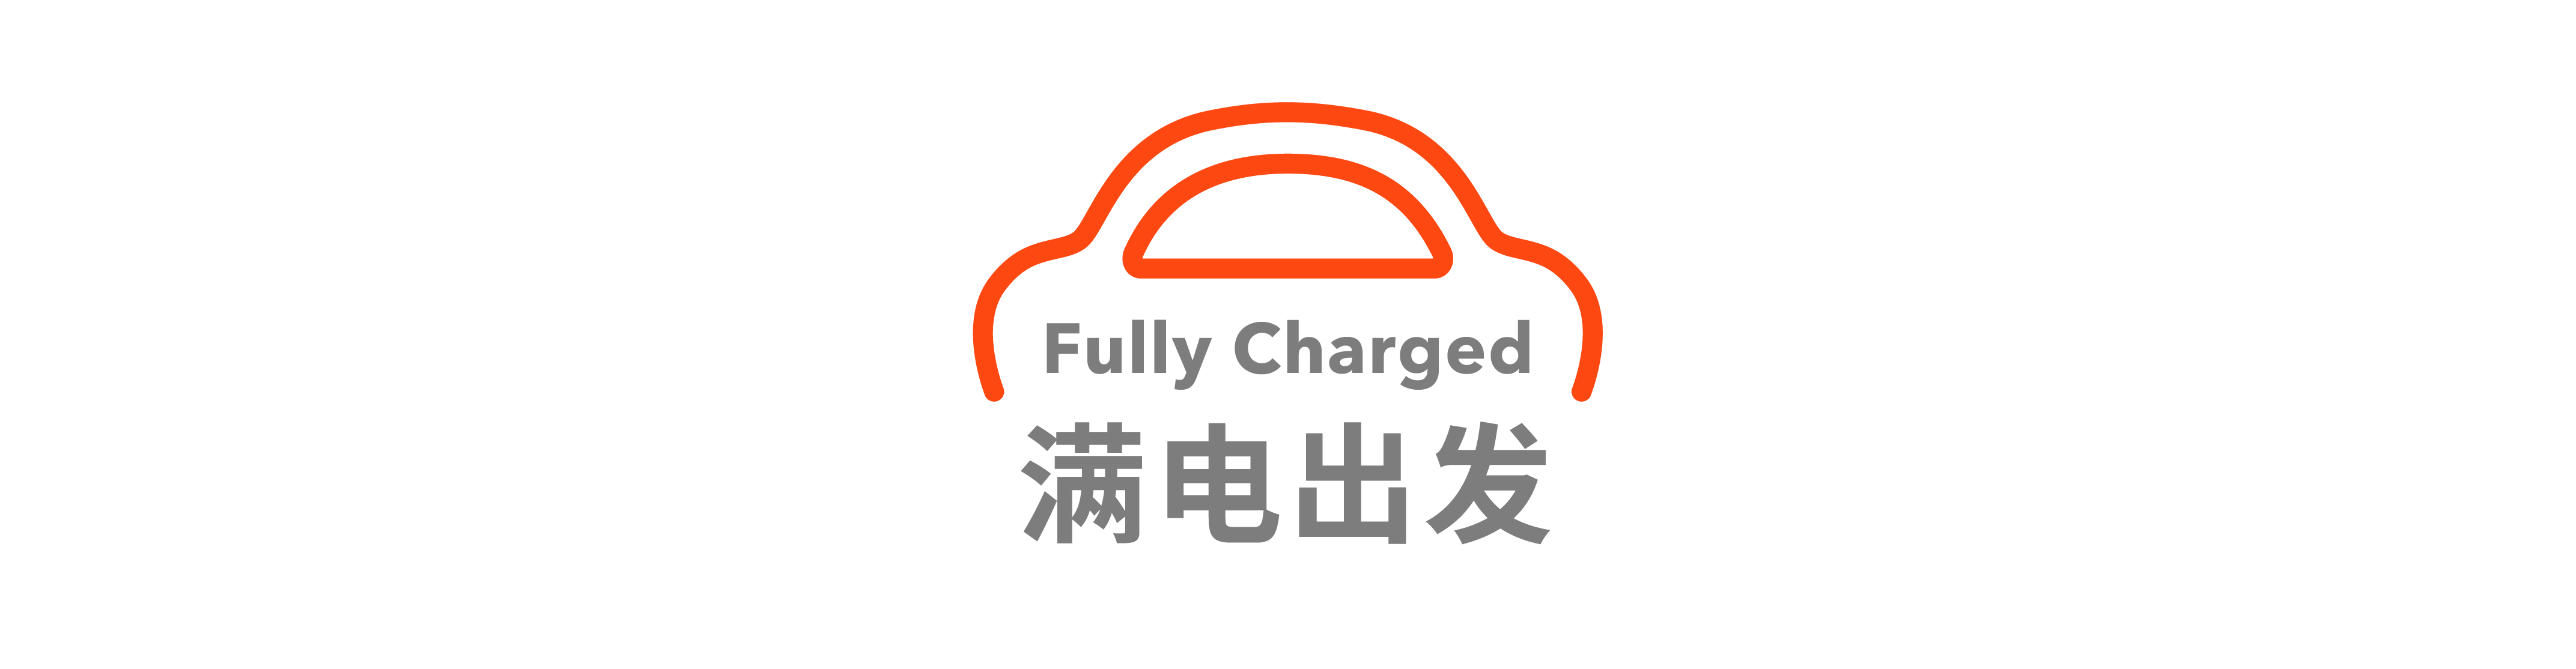 11 - I dipendenti di Dong Che Daily｜NIO hanno risposto a riduzioni di prezzo e promozioni / Il fornitore Xiaomi è stato multato di 1 milione di yuan per perdite / Volvo potrebbe pianificare di “trasferire energia a tutti i dipendenti”